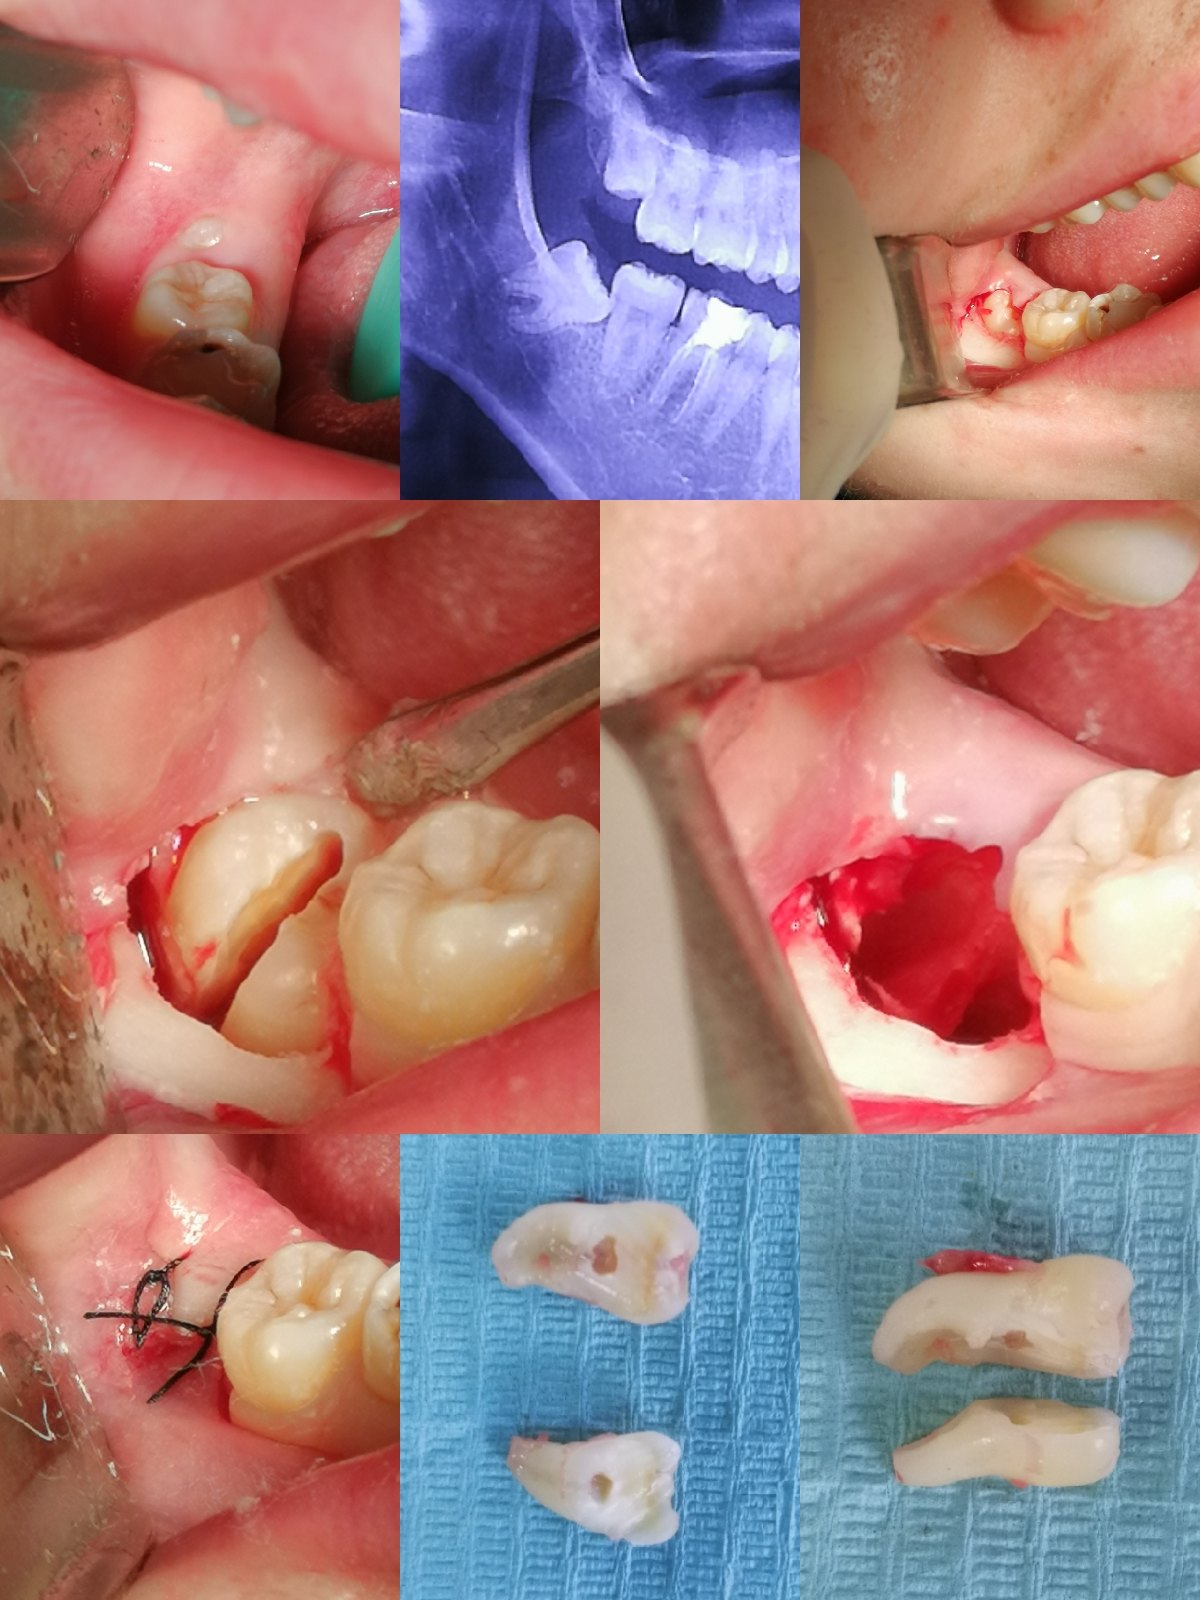 局部麻醉～切开翻瓣～涡轮机切割牙体～拔除智齿～清理缝合.